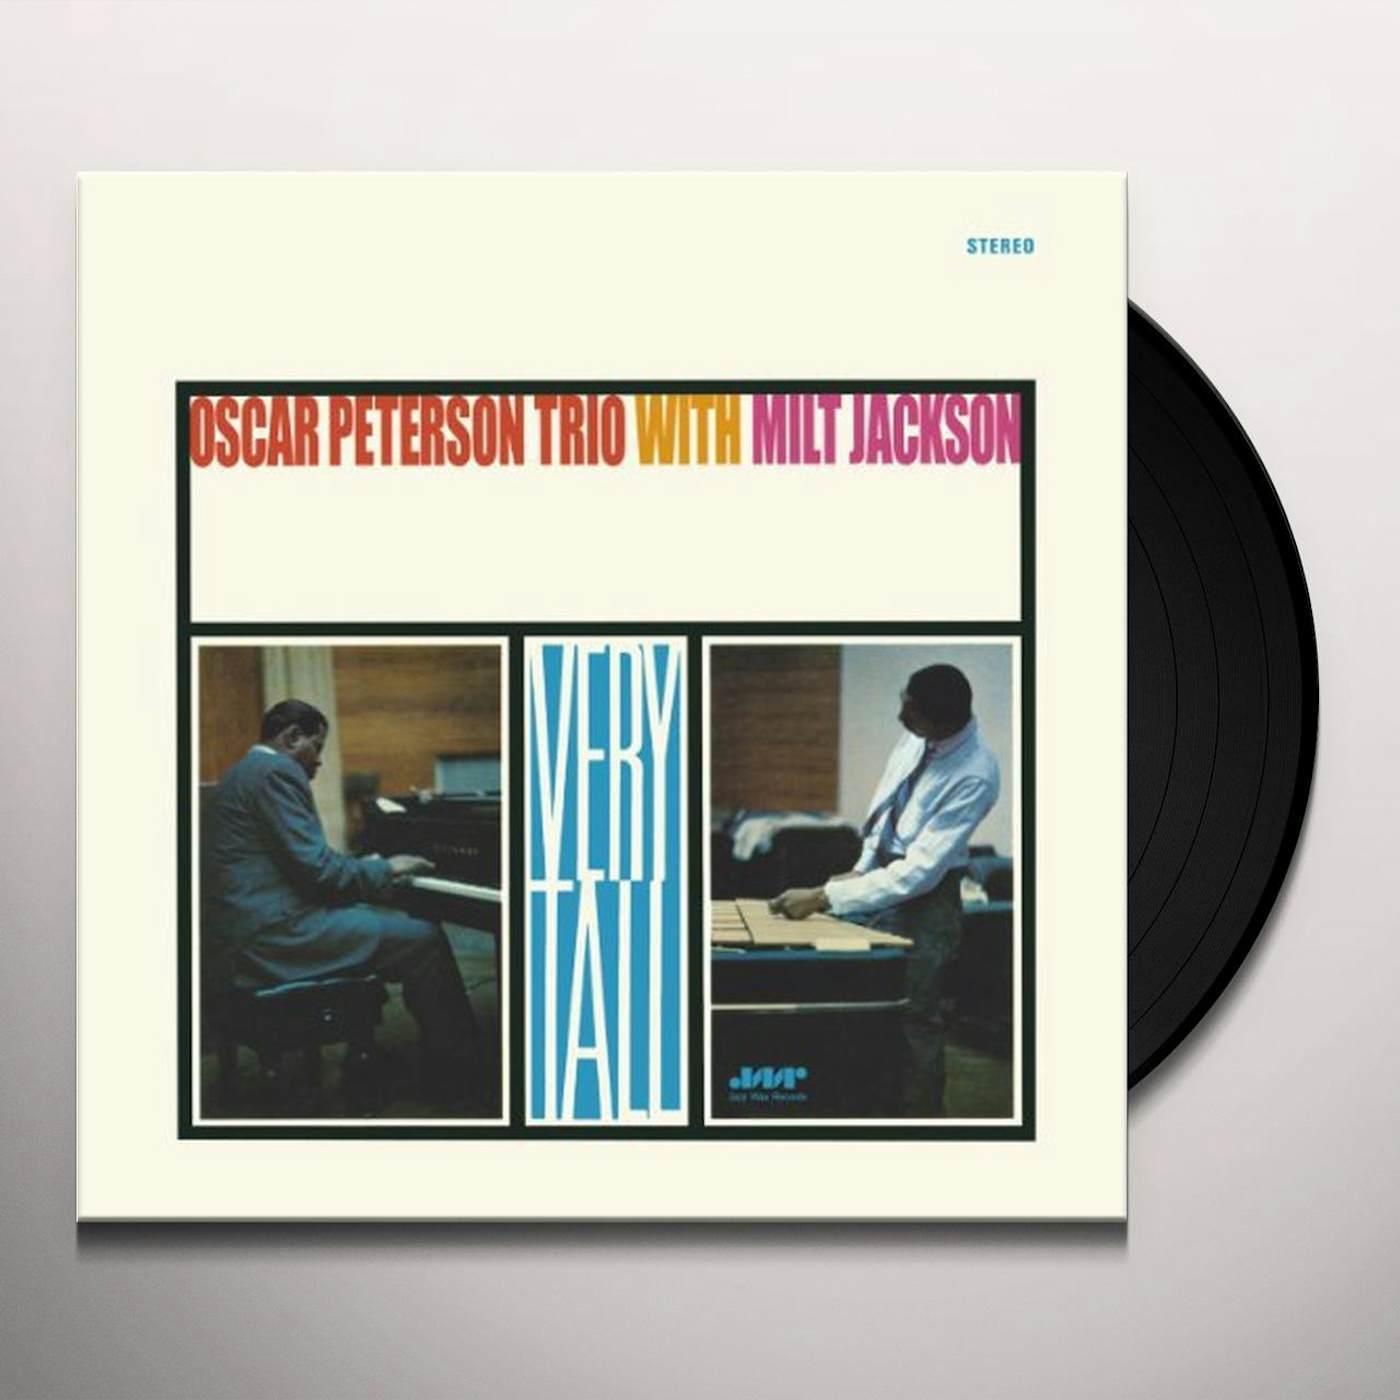 Oscar Peterson & Milt Jackson Very Tall Vinyl Record